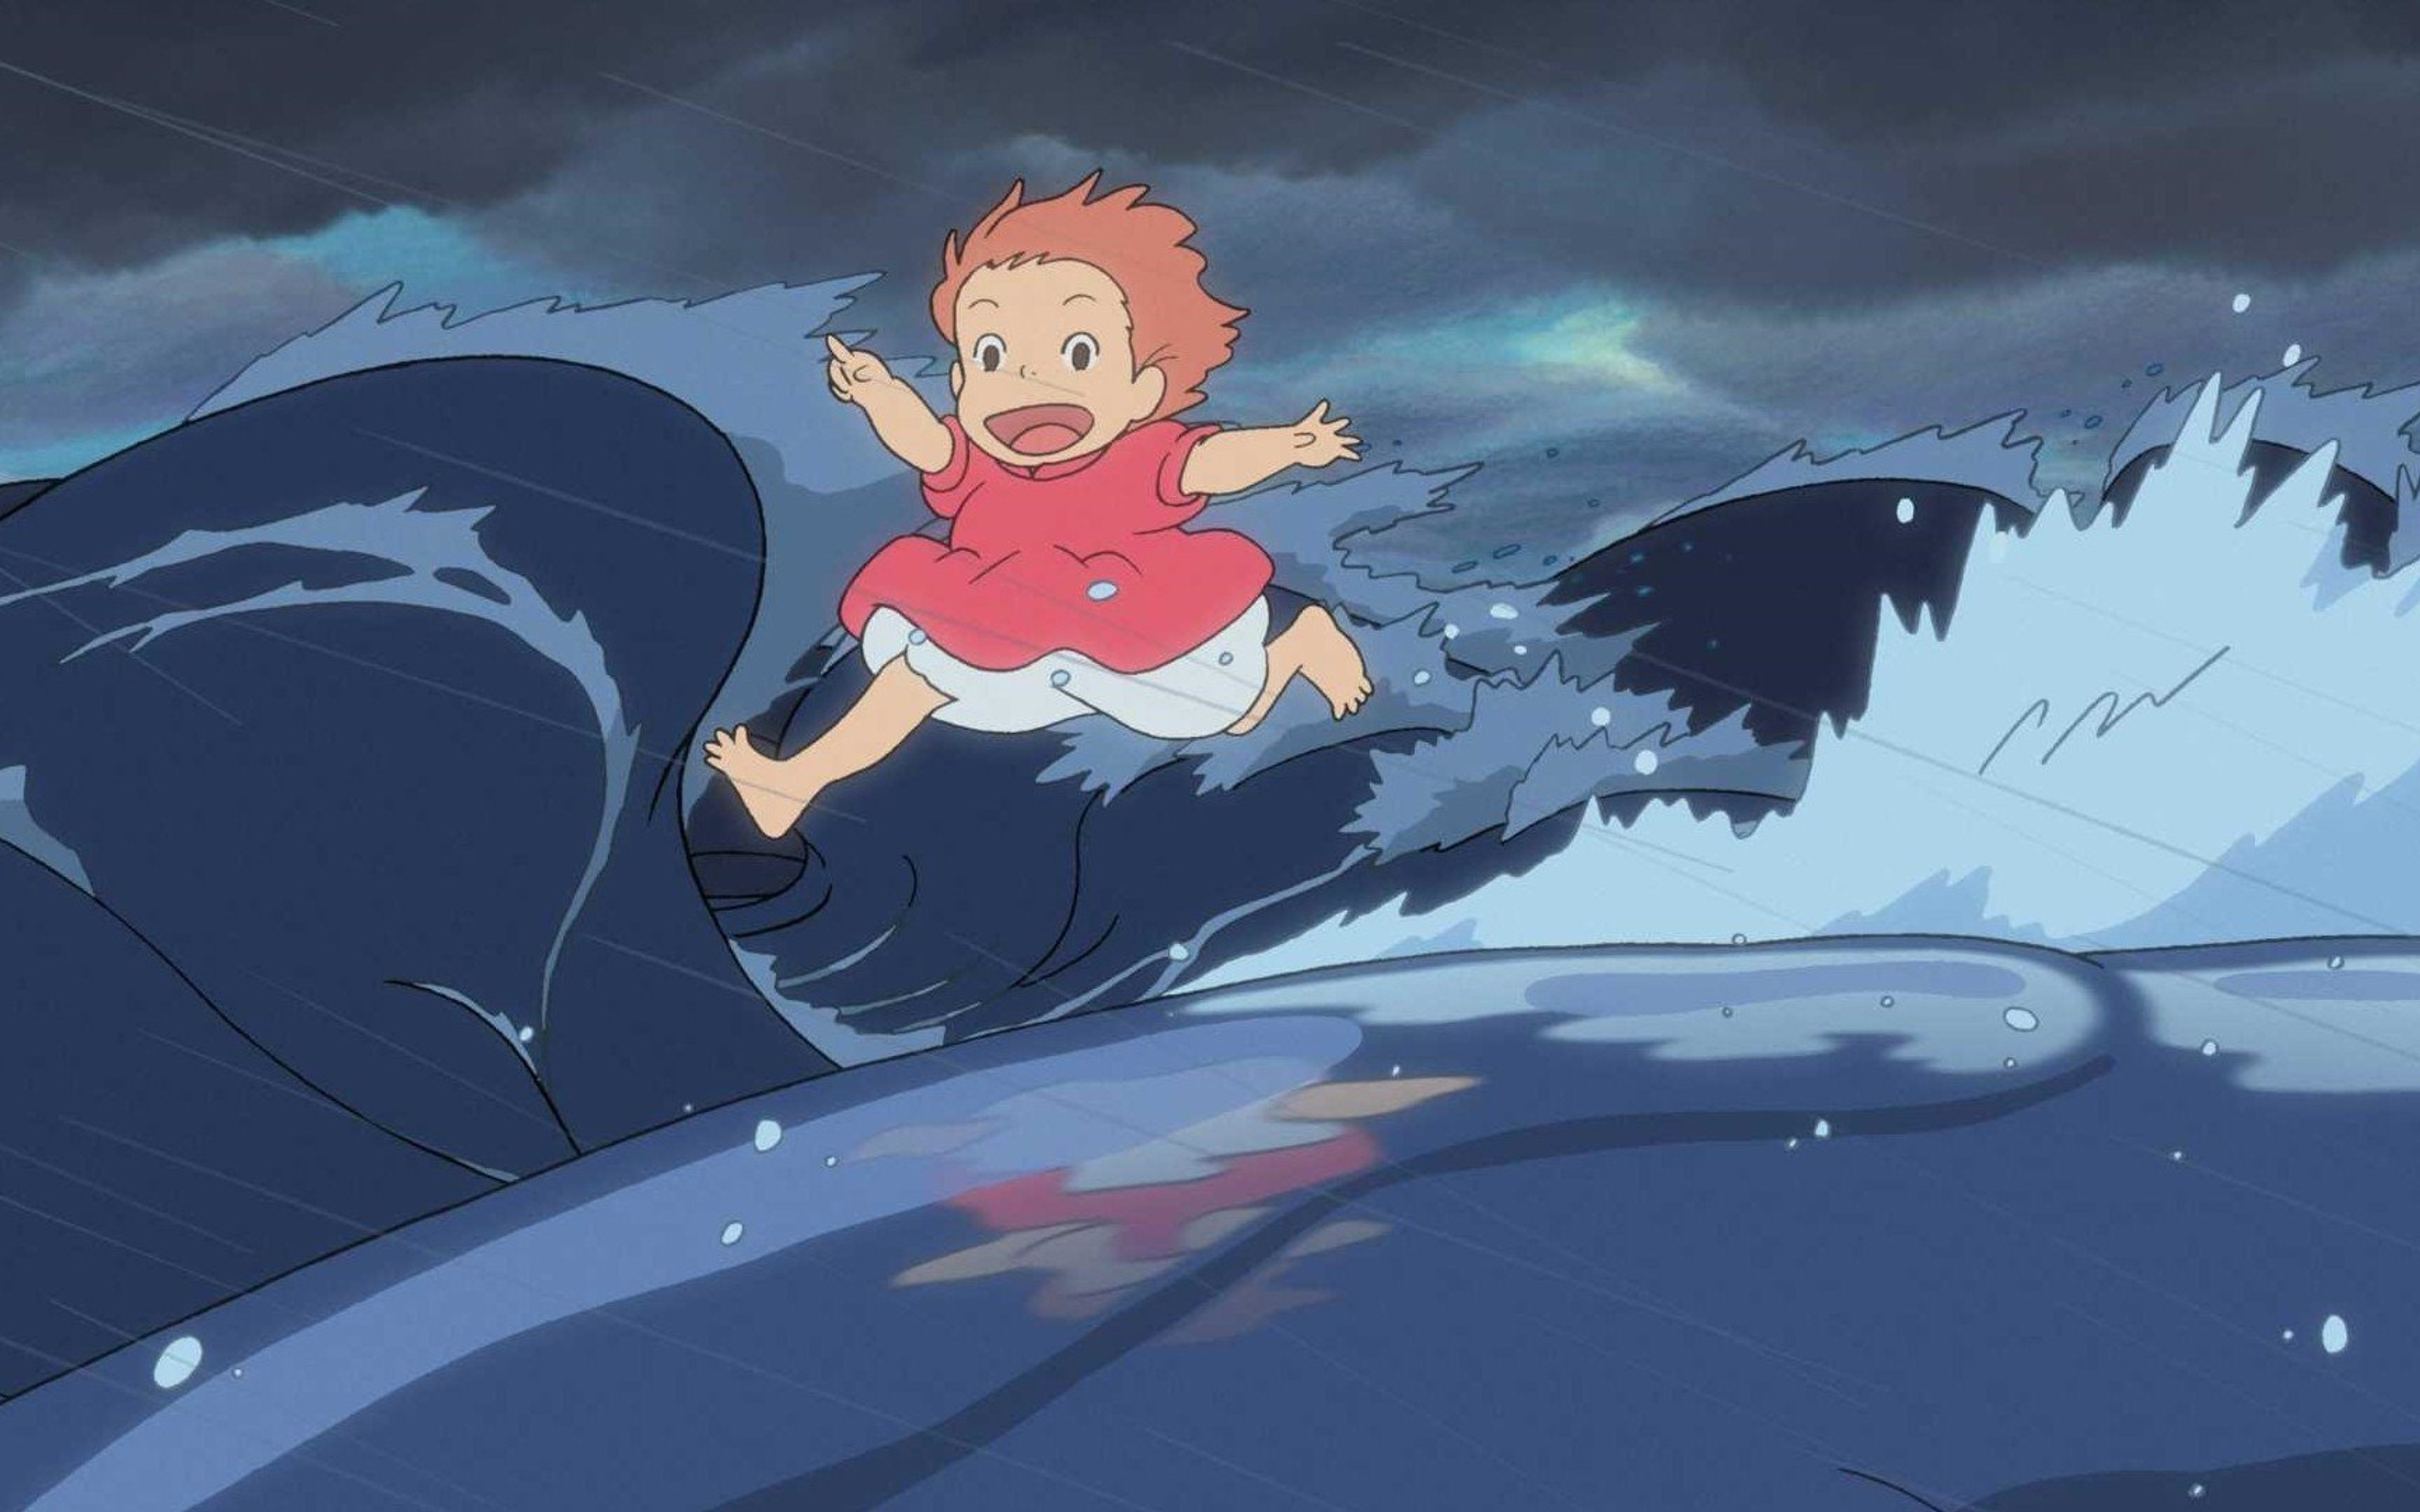 宫崎骏动漫作品“起风了”影视原画高清电脑壁纸合集